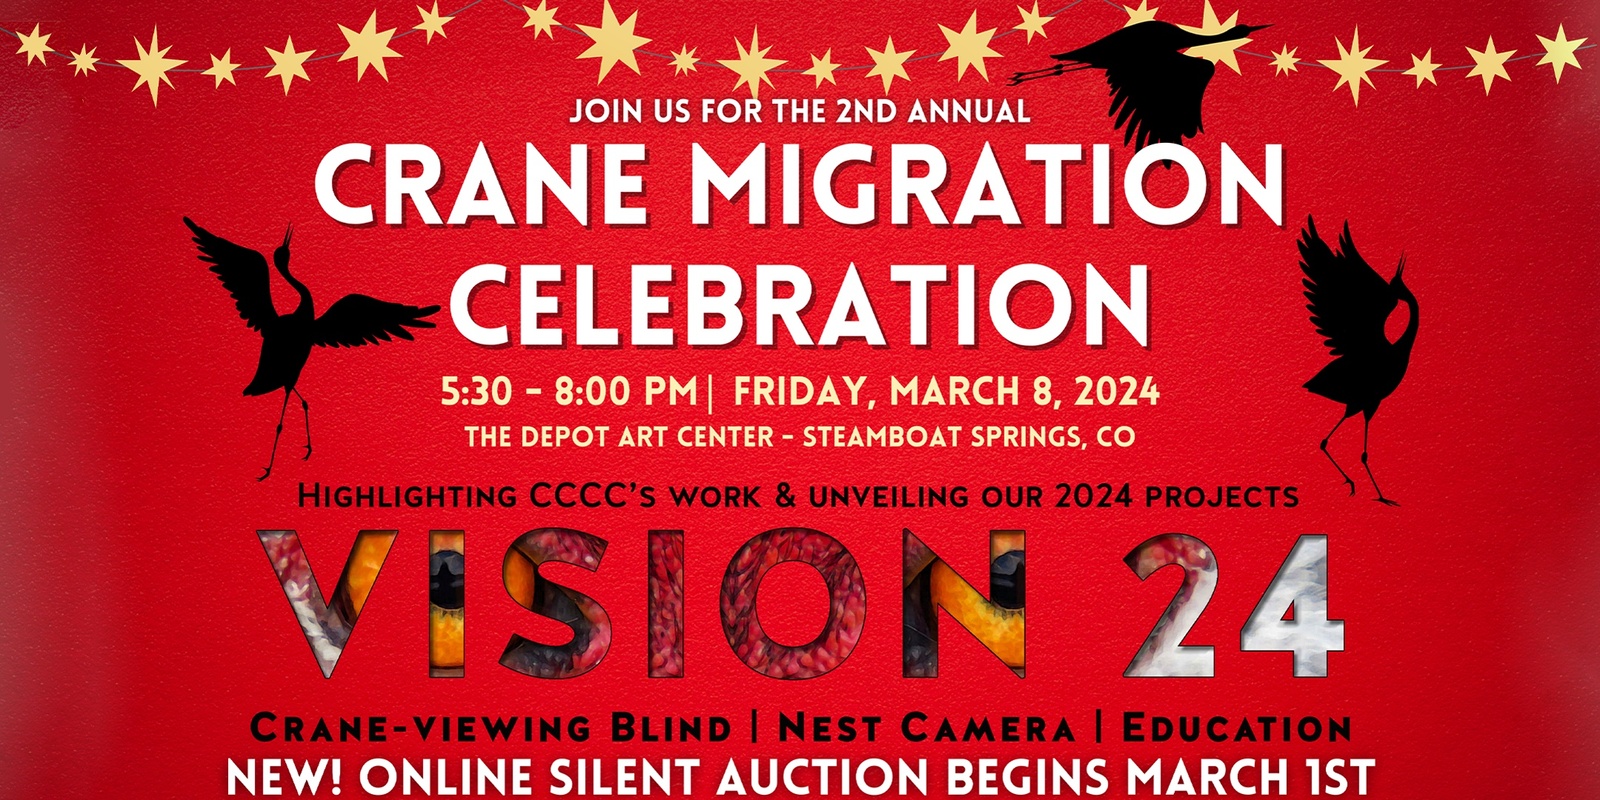 Banner image for 2nd annual Crane Migration Celebration